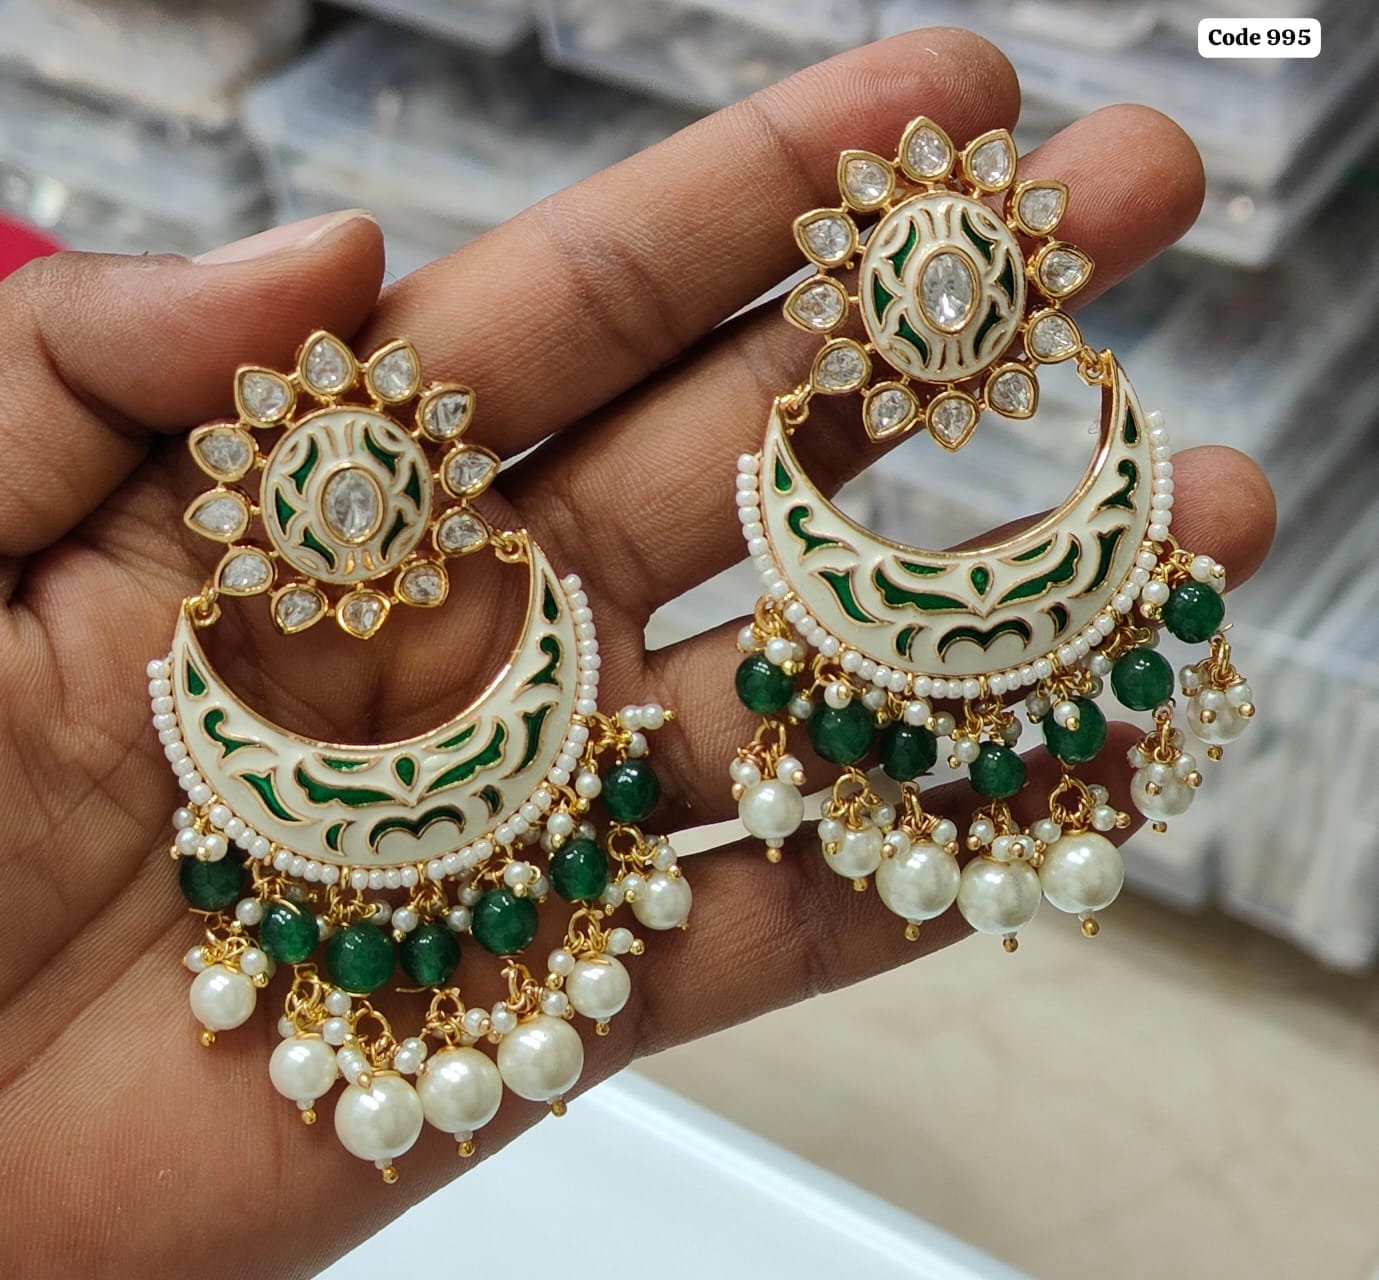 Exquisite Handpainted Meenakari Kundan Earrings: Timeless Jewelry Craftsmanship